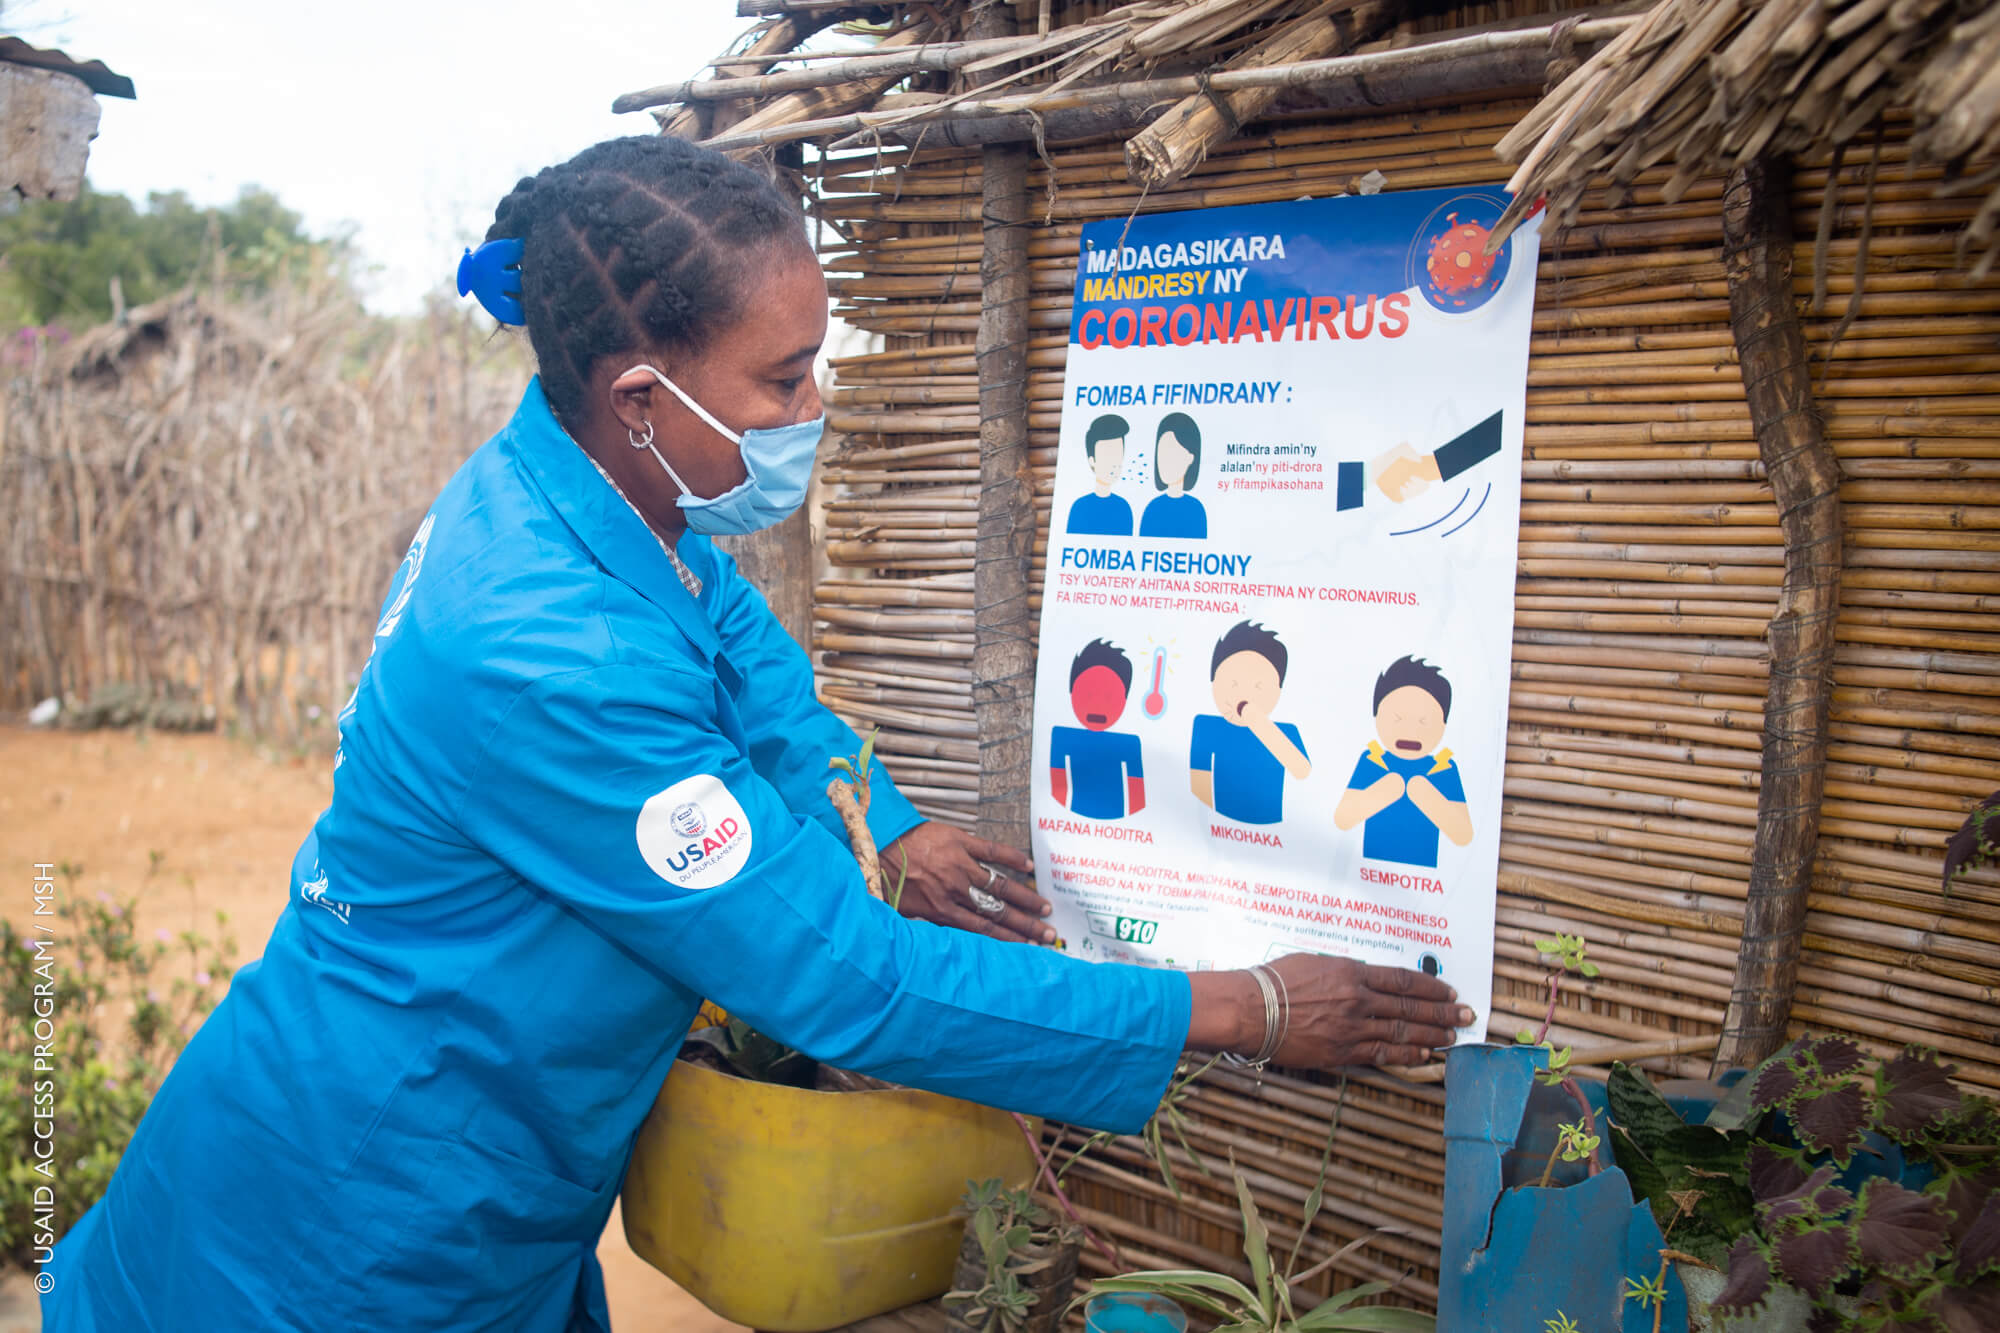 Un agent de santé communautaire à Madagascar met en place une affiche éducative sur la prévention du COVID-19.